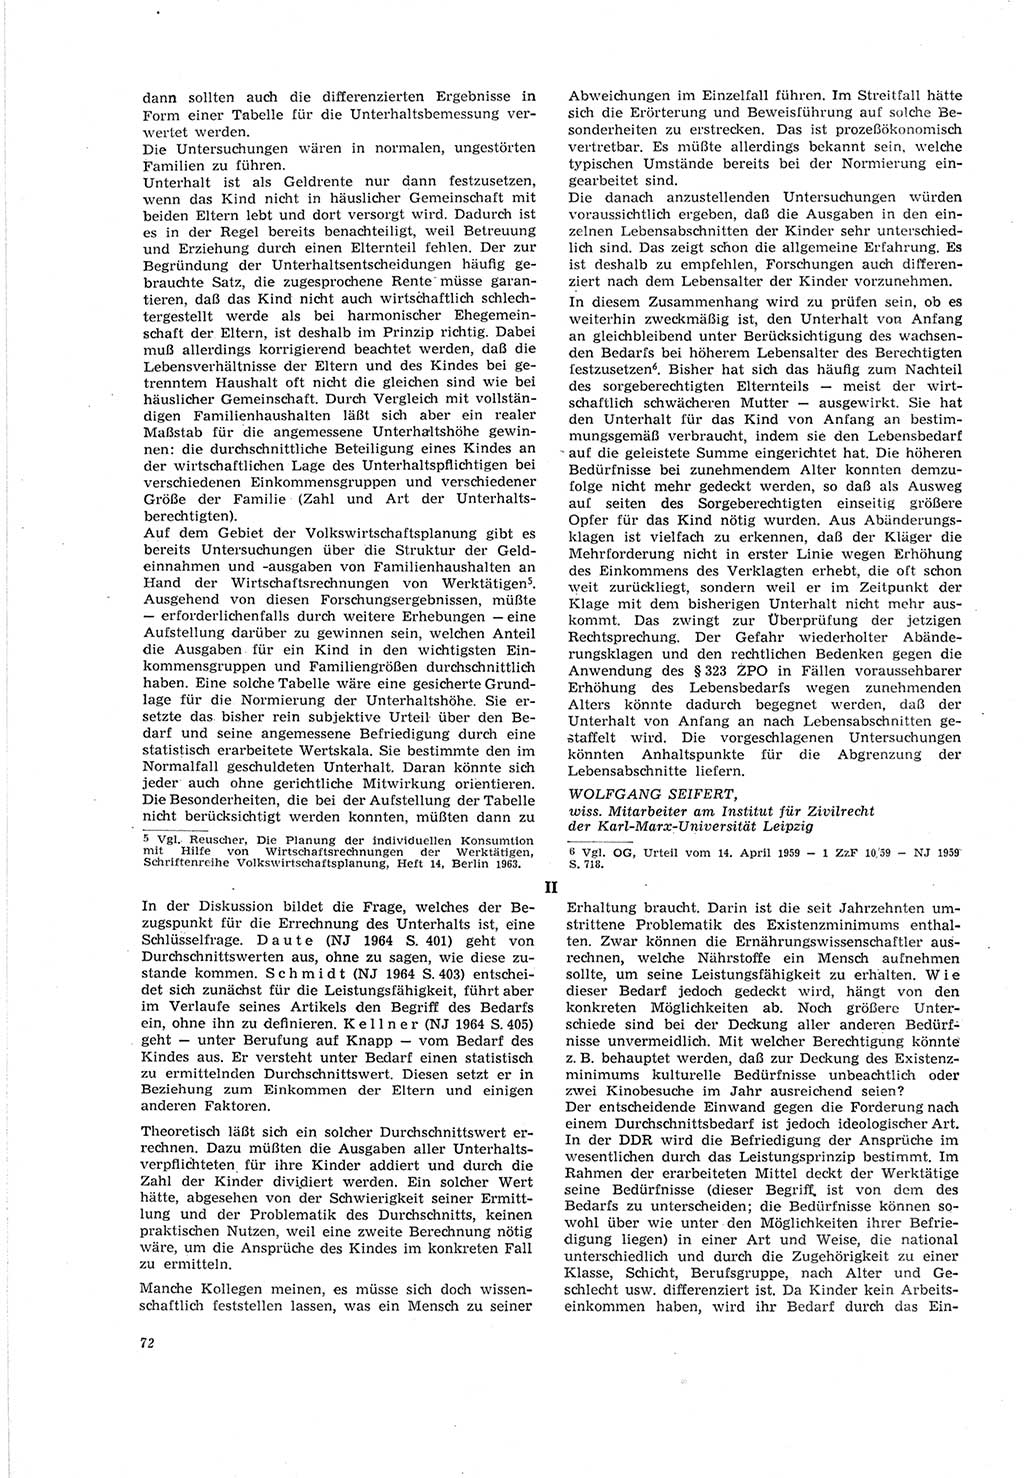 Neue Justiz (NJ), Zeitschrift für Recht und Rechtswissenschaft [Deutsche Demokratische Republik (DDR)], 19. Jahrgang 1965, Seite 72 (NJ DDR 1965, S. 72)